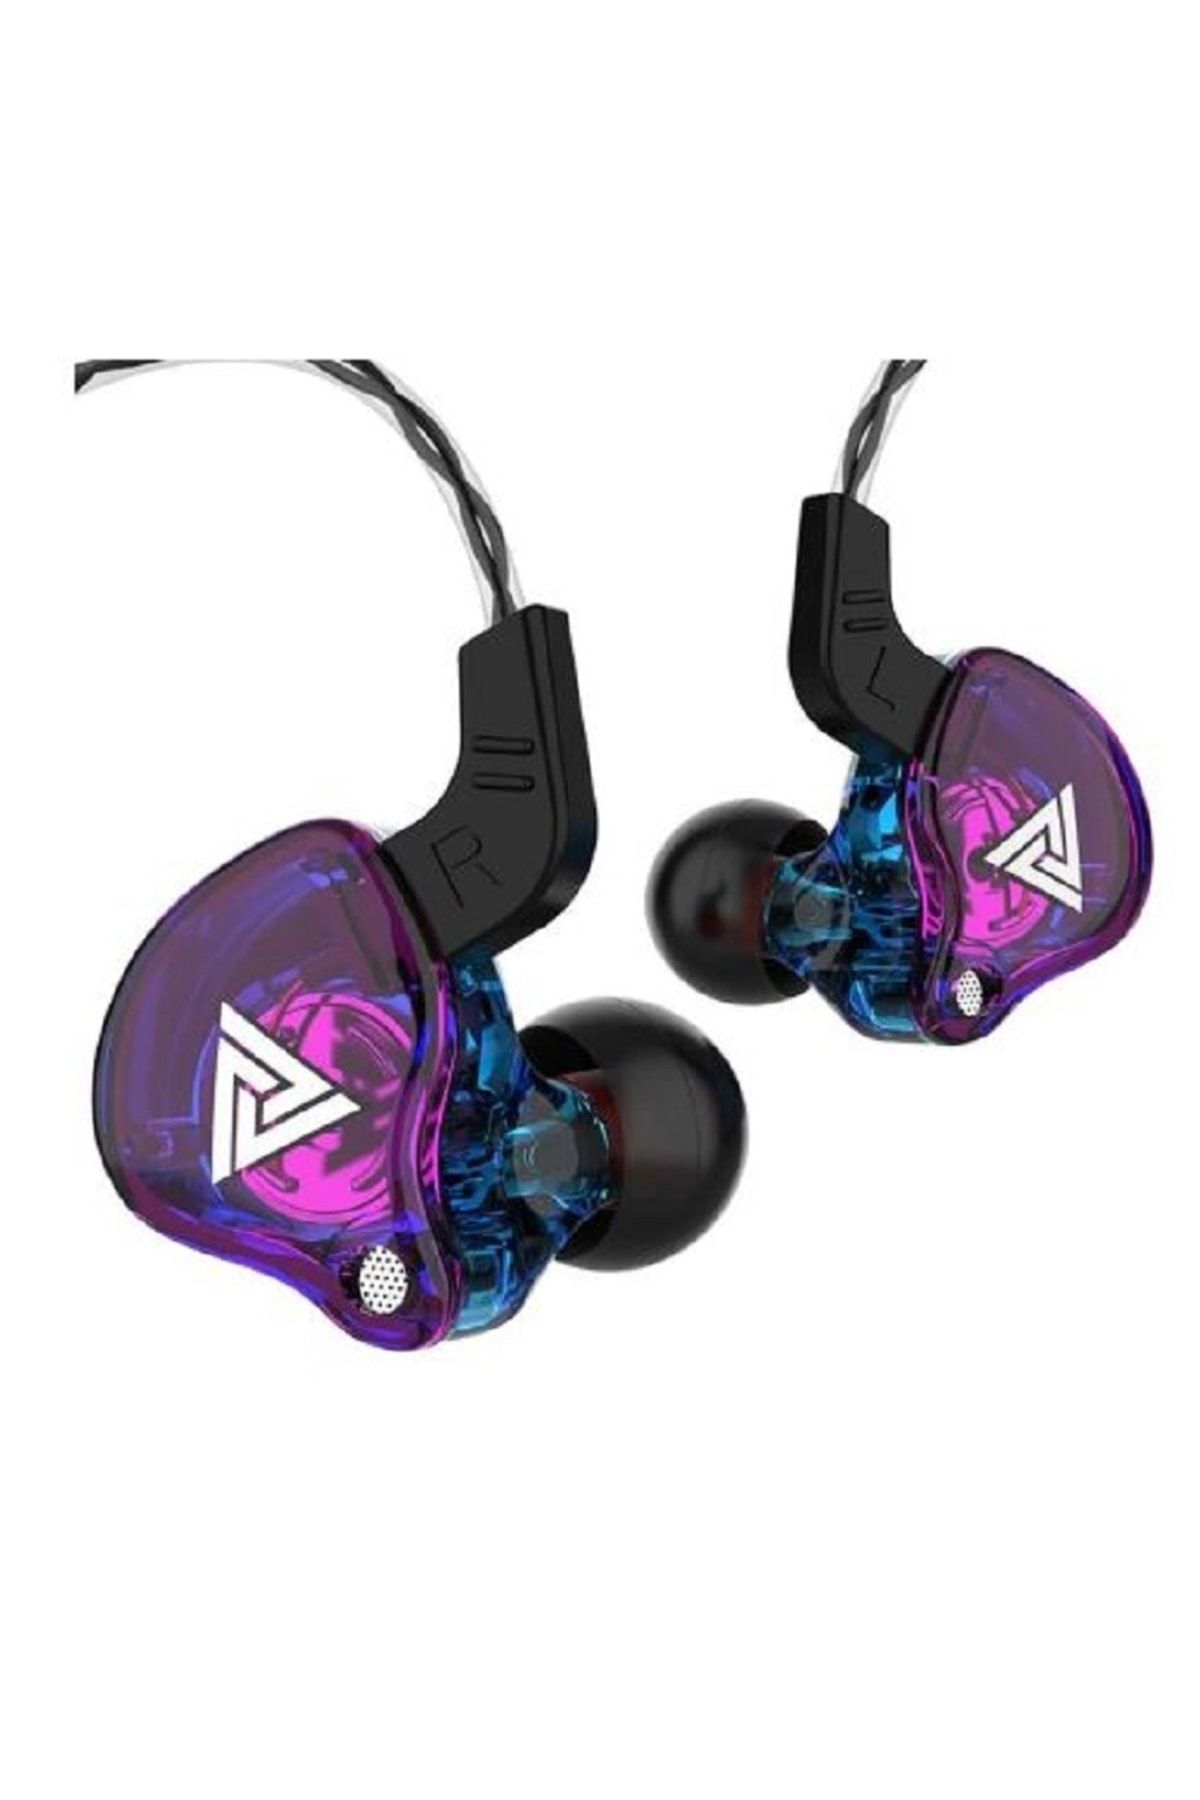 stereo Qkz Hi-res Audio Kablolu Kulaklık Hifi Spor Kulaklıkları - Mikrofonlu Kulaklık Oyun Telefon Bass